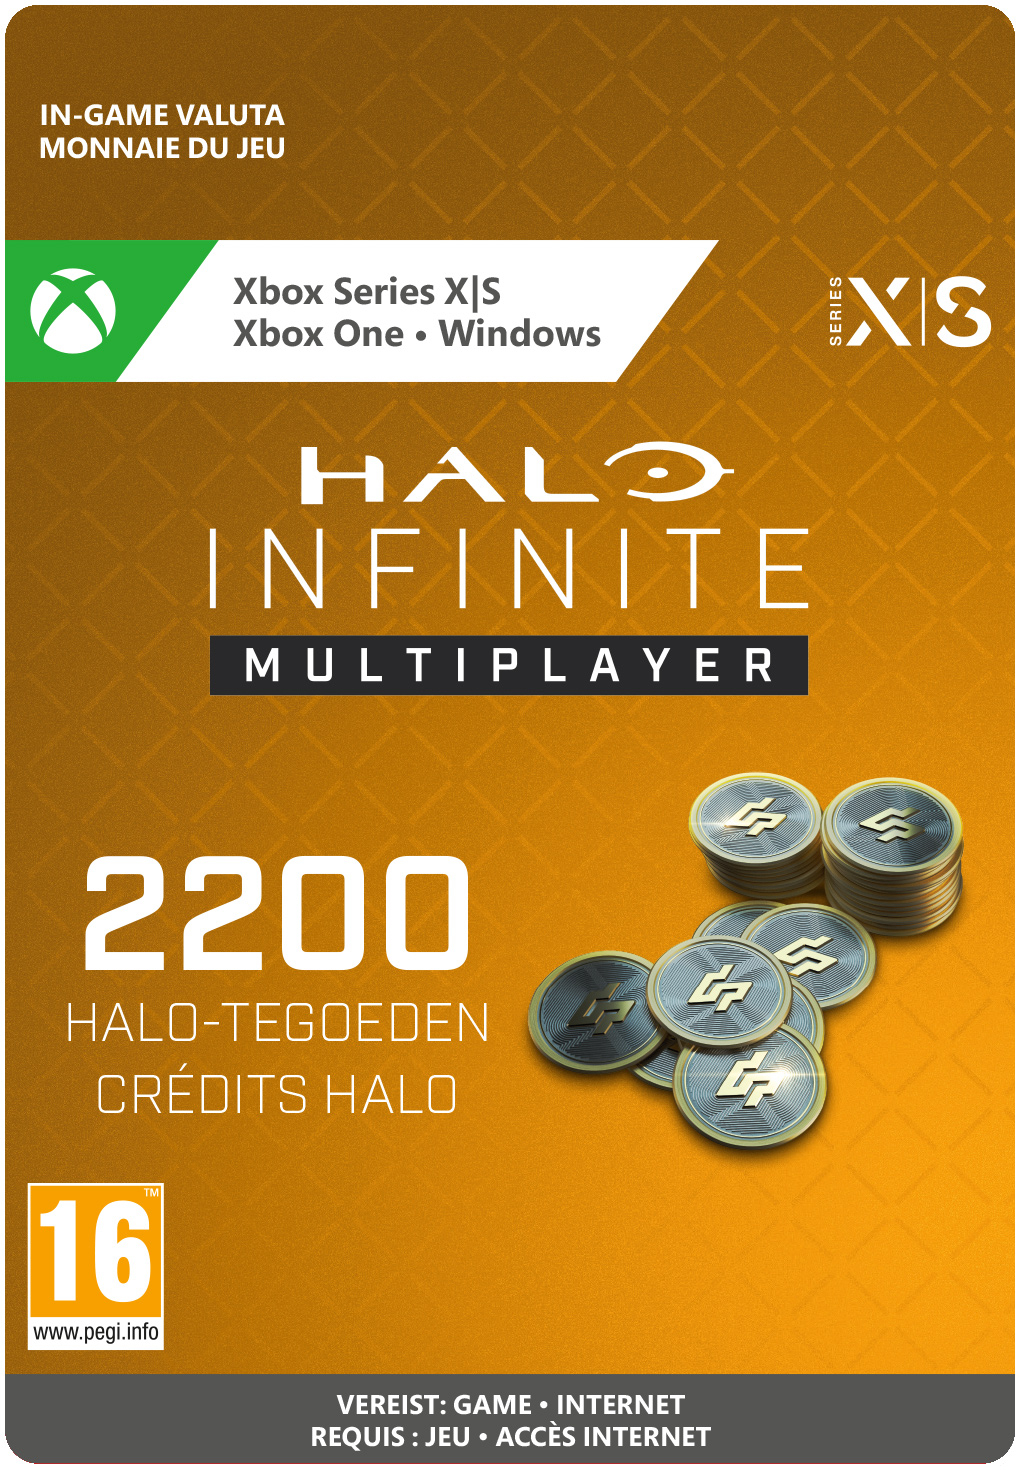 2200 Xbox Halo Credits